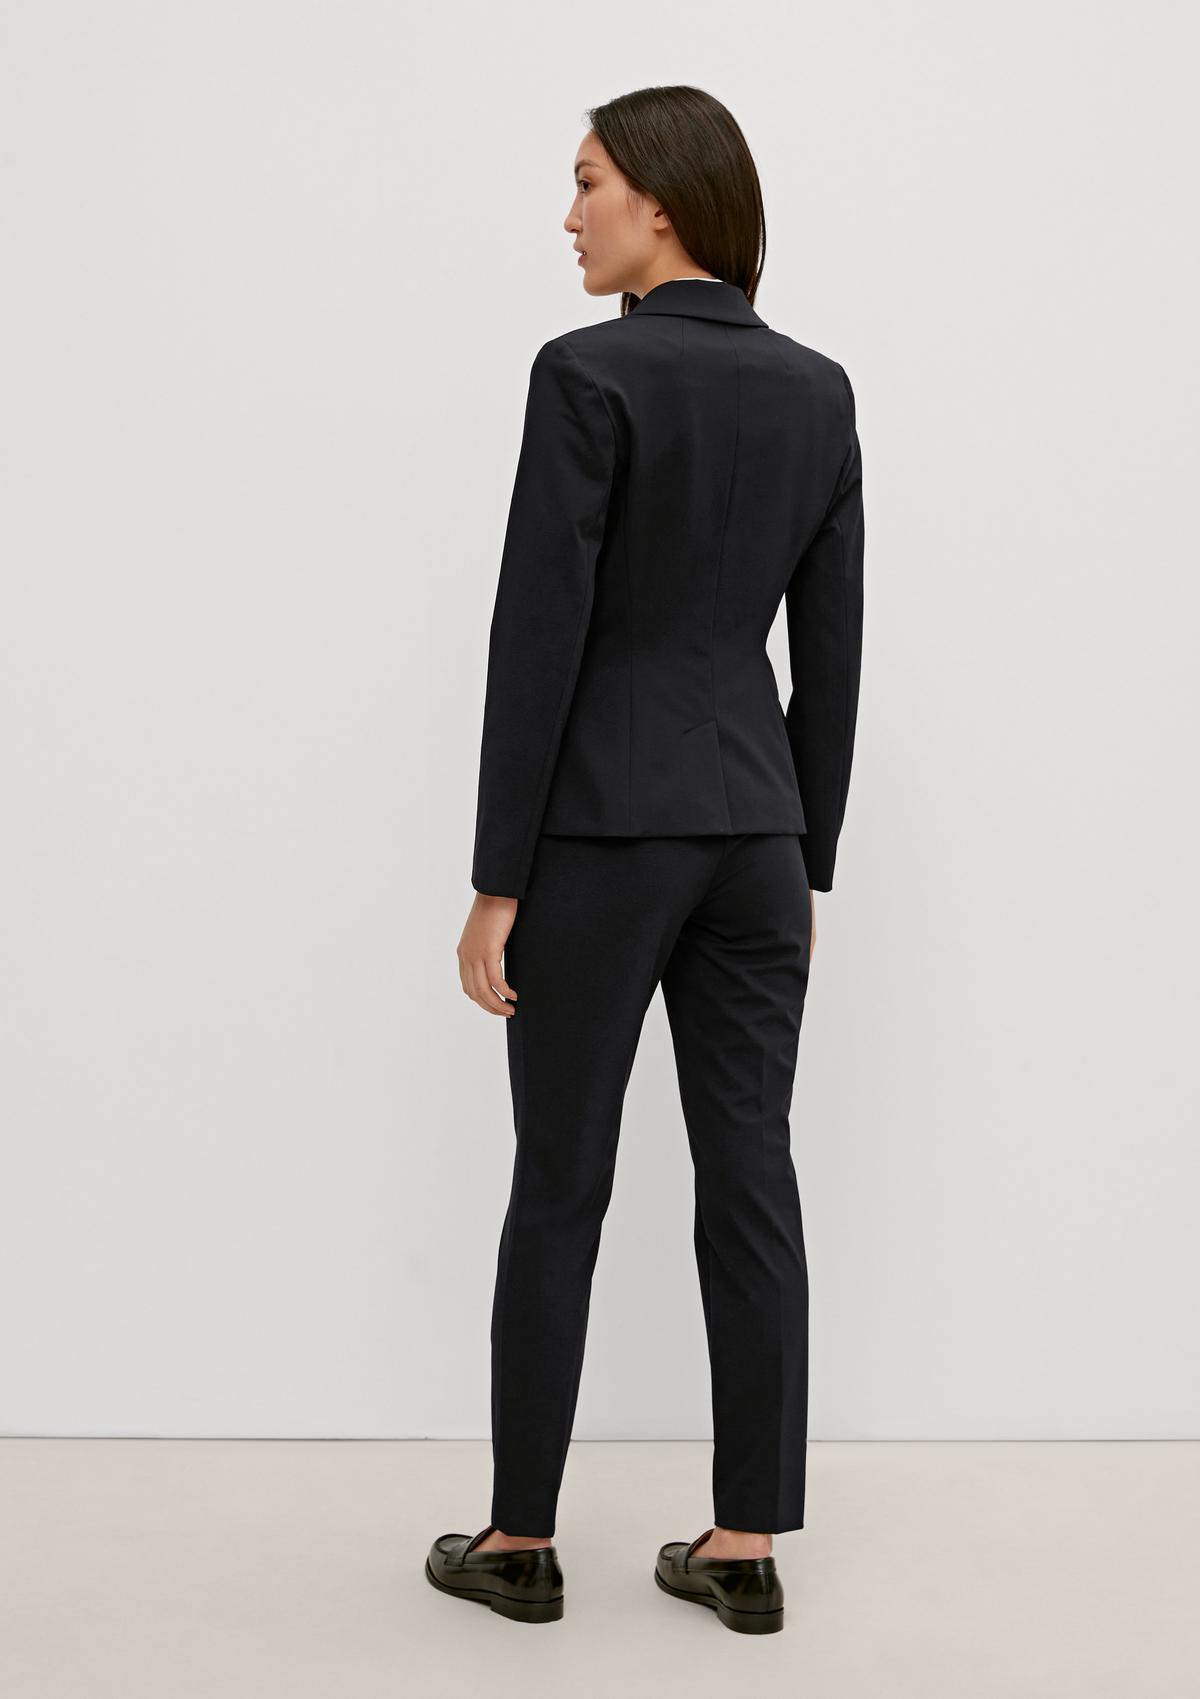 The Black Performance Suit - Flap Pockets